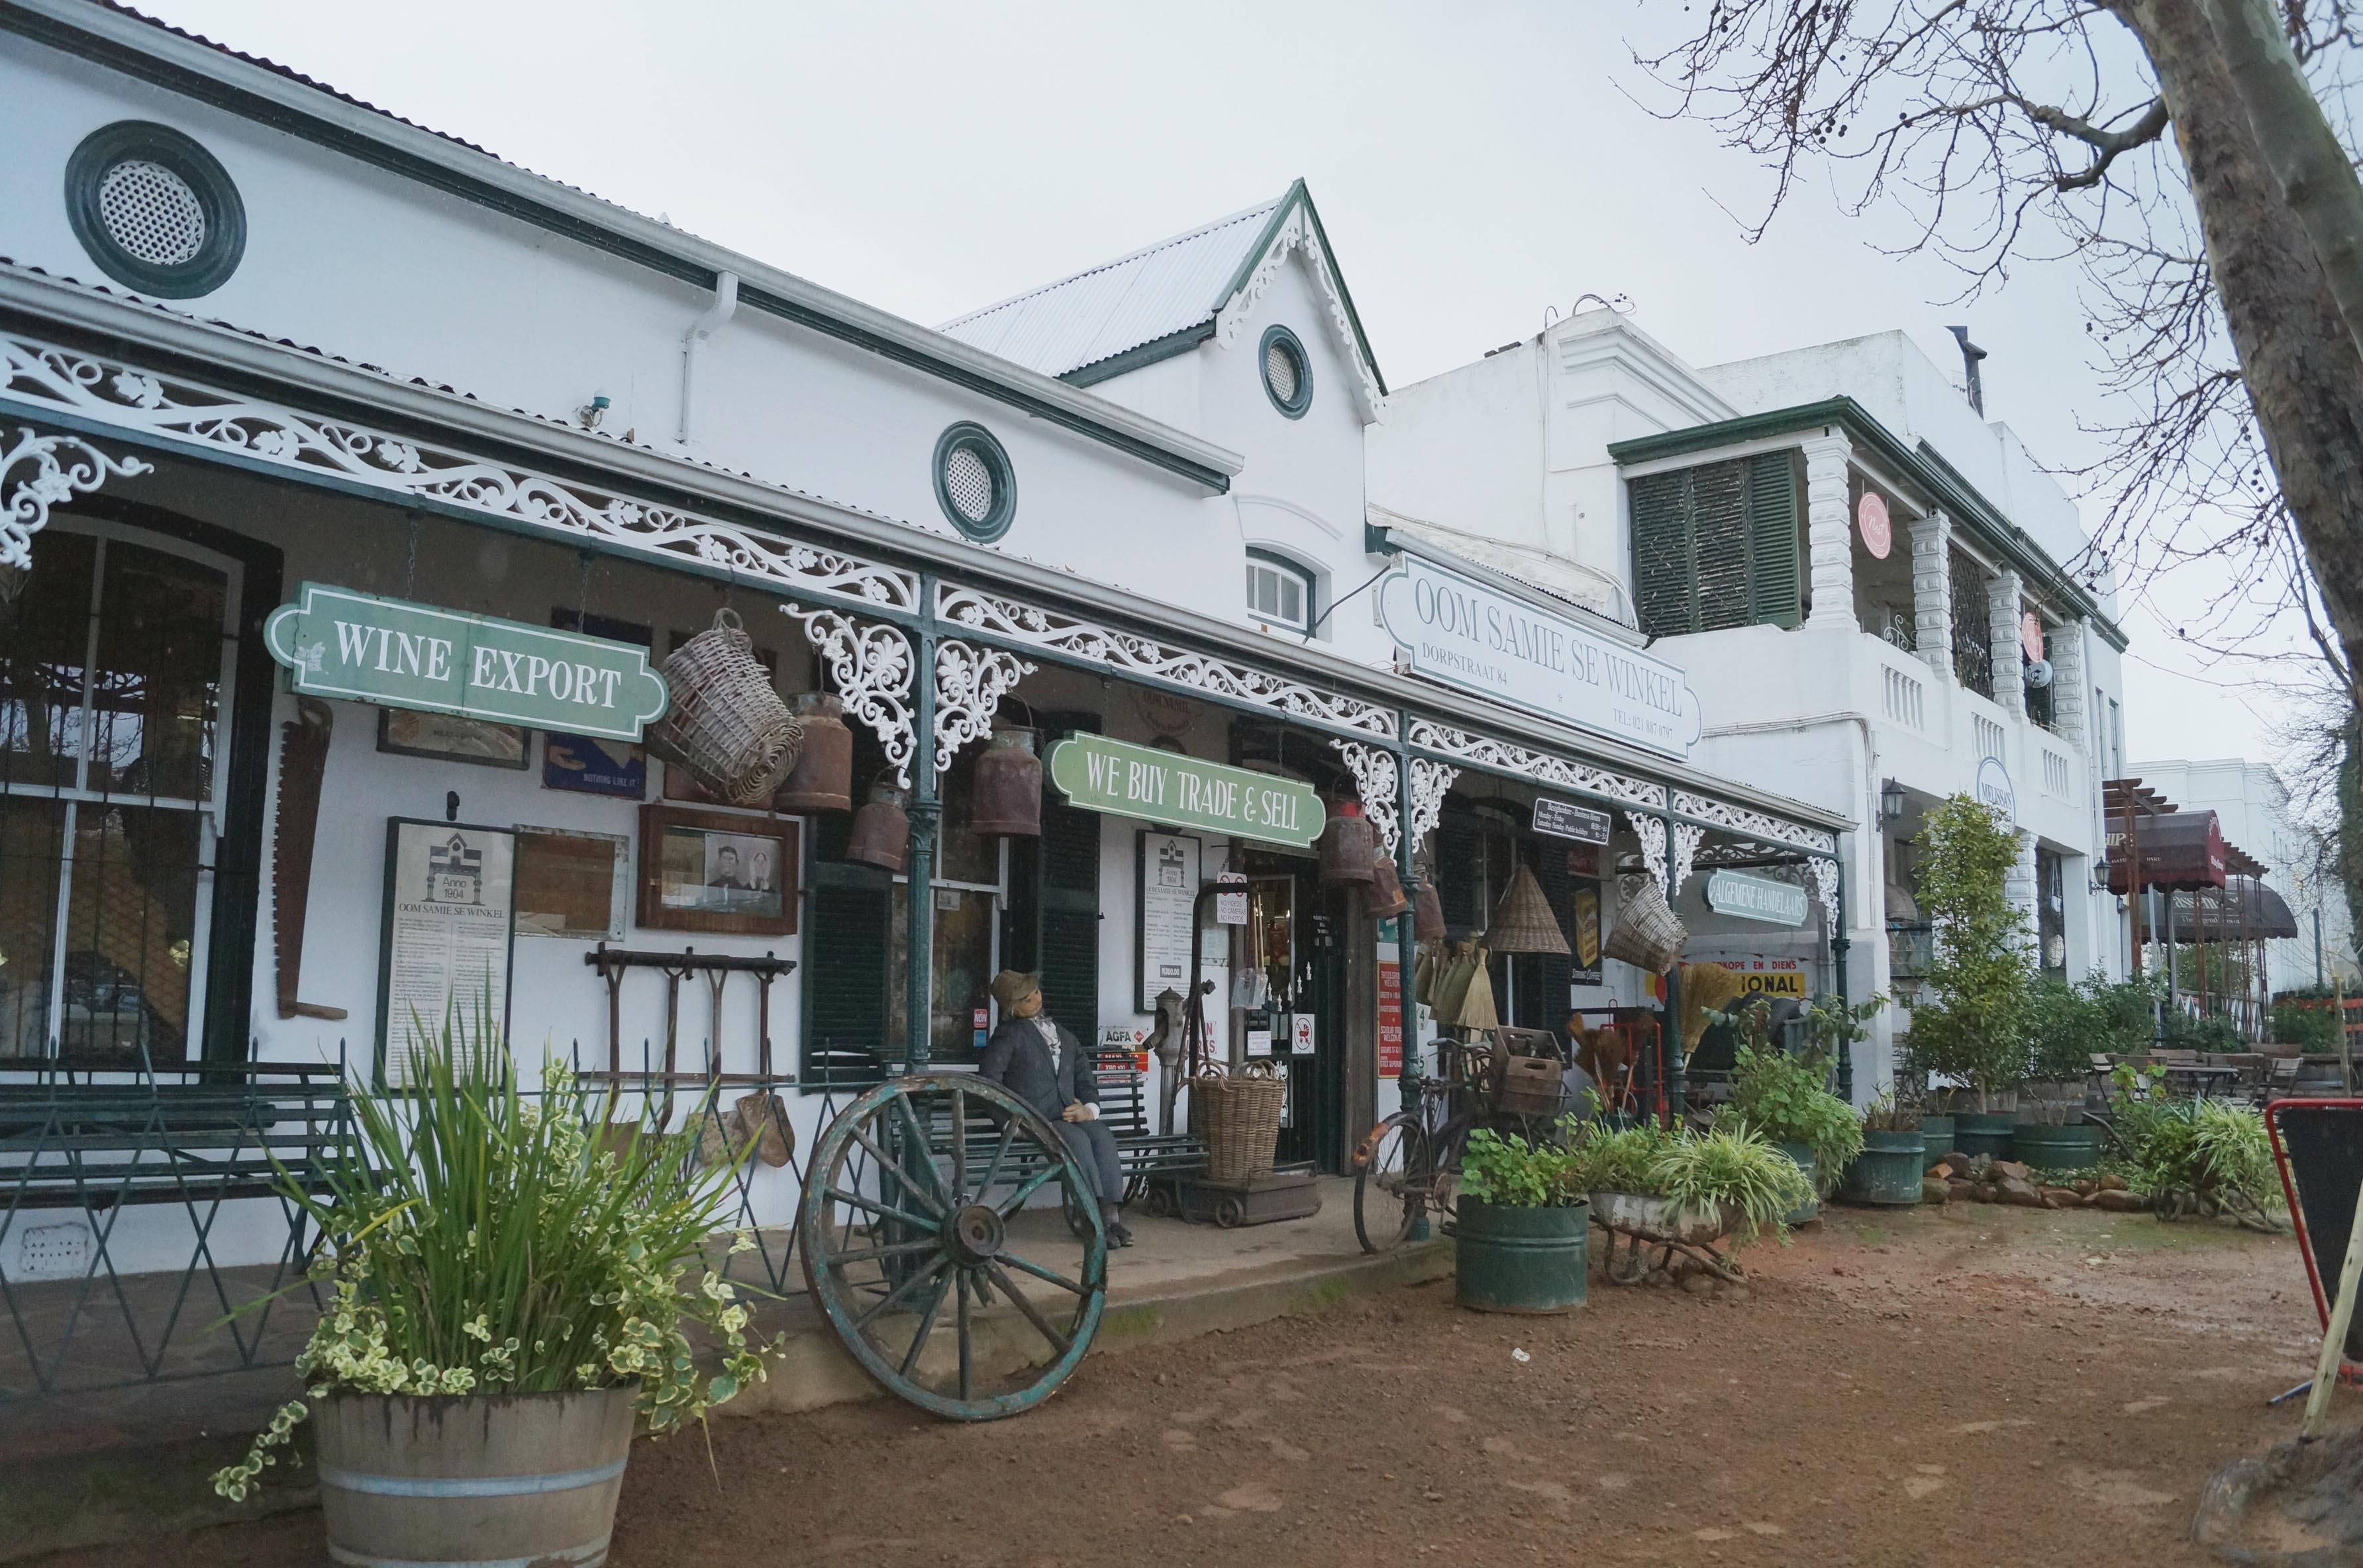 Oom Samie Se Winkel: una tiendecita rural en Stellenbosch/Oom Samie Se Winkel: a small rural shop in Stellenbosch